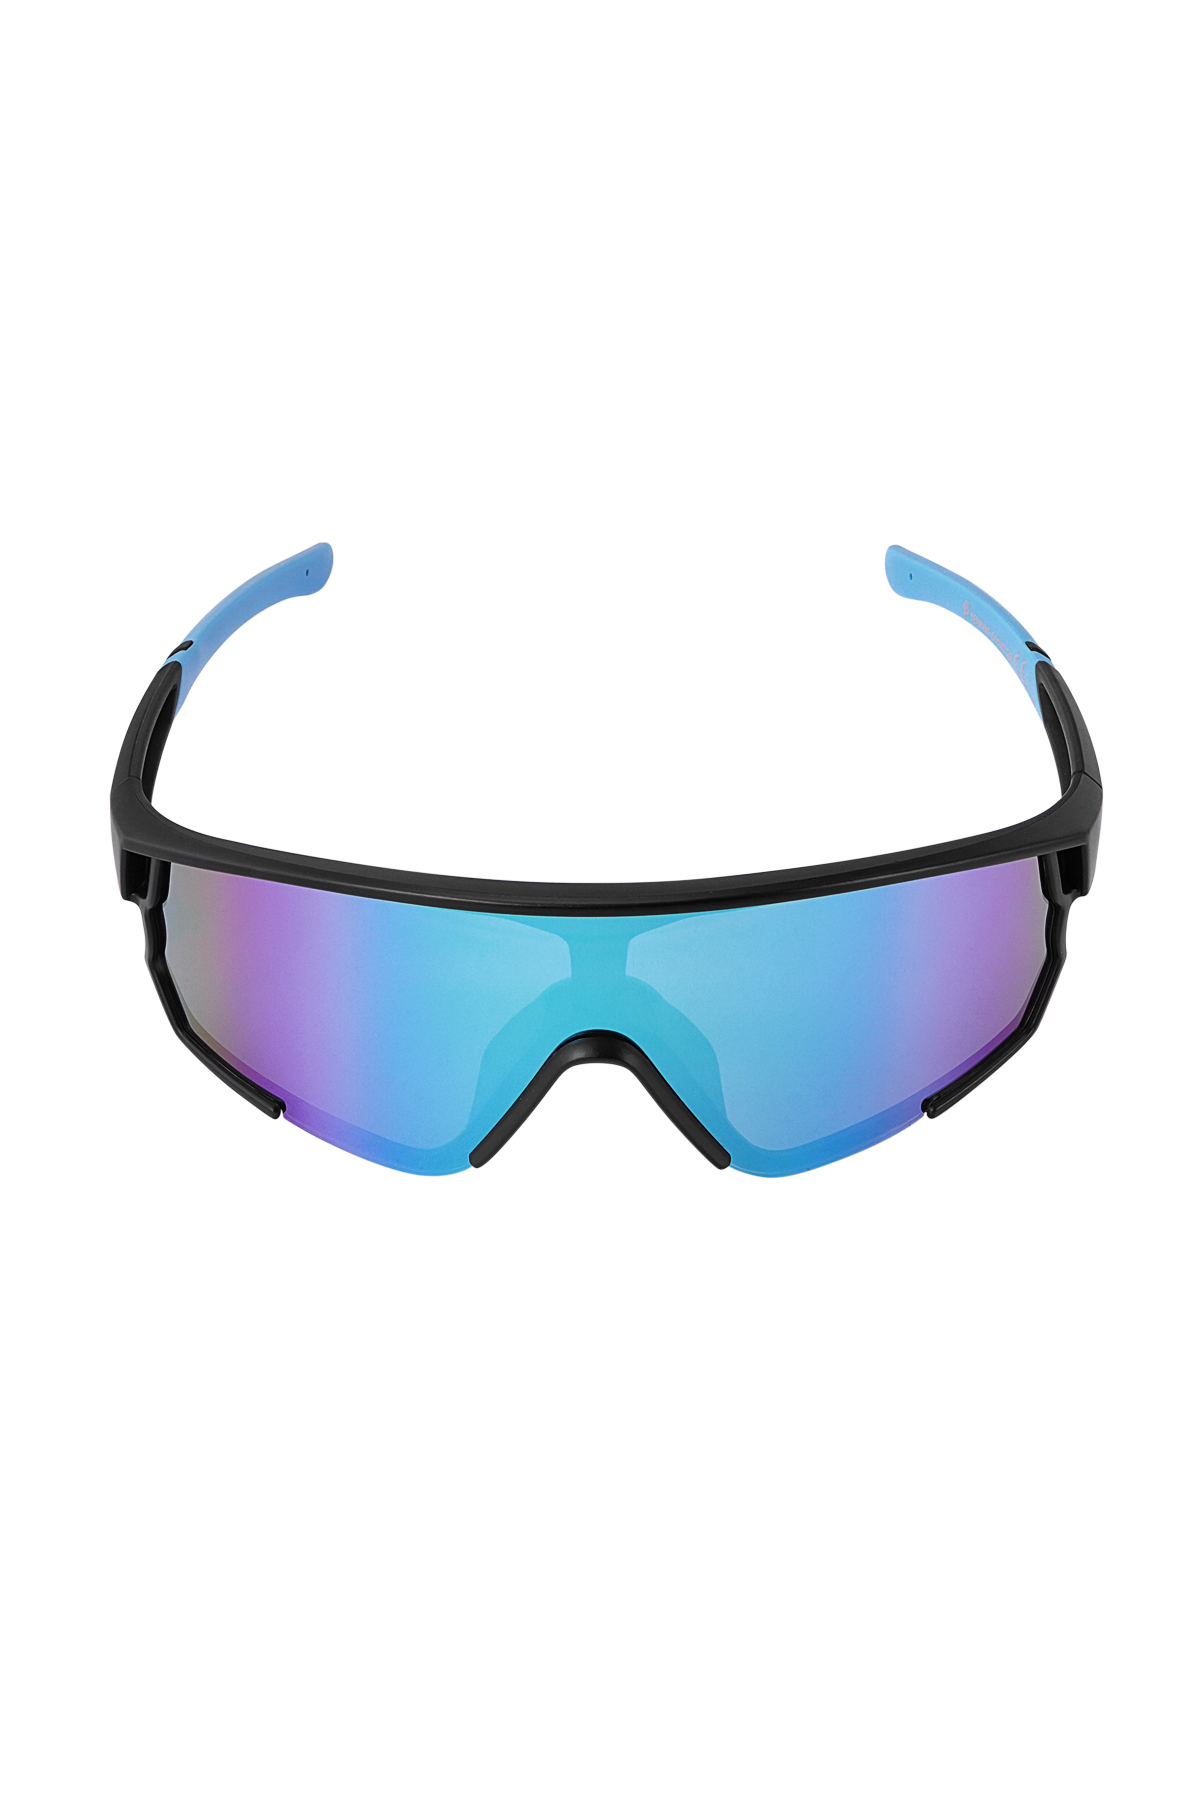 Gafas de sol con lentes de colores - negro/azul h5 Imagen6